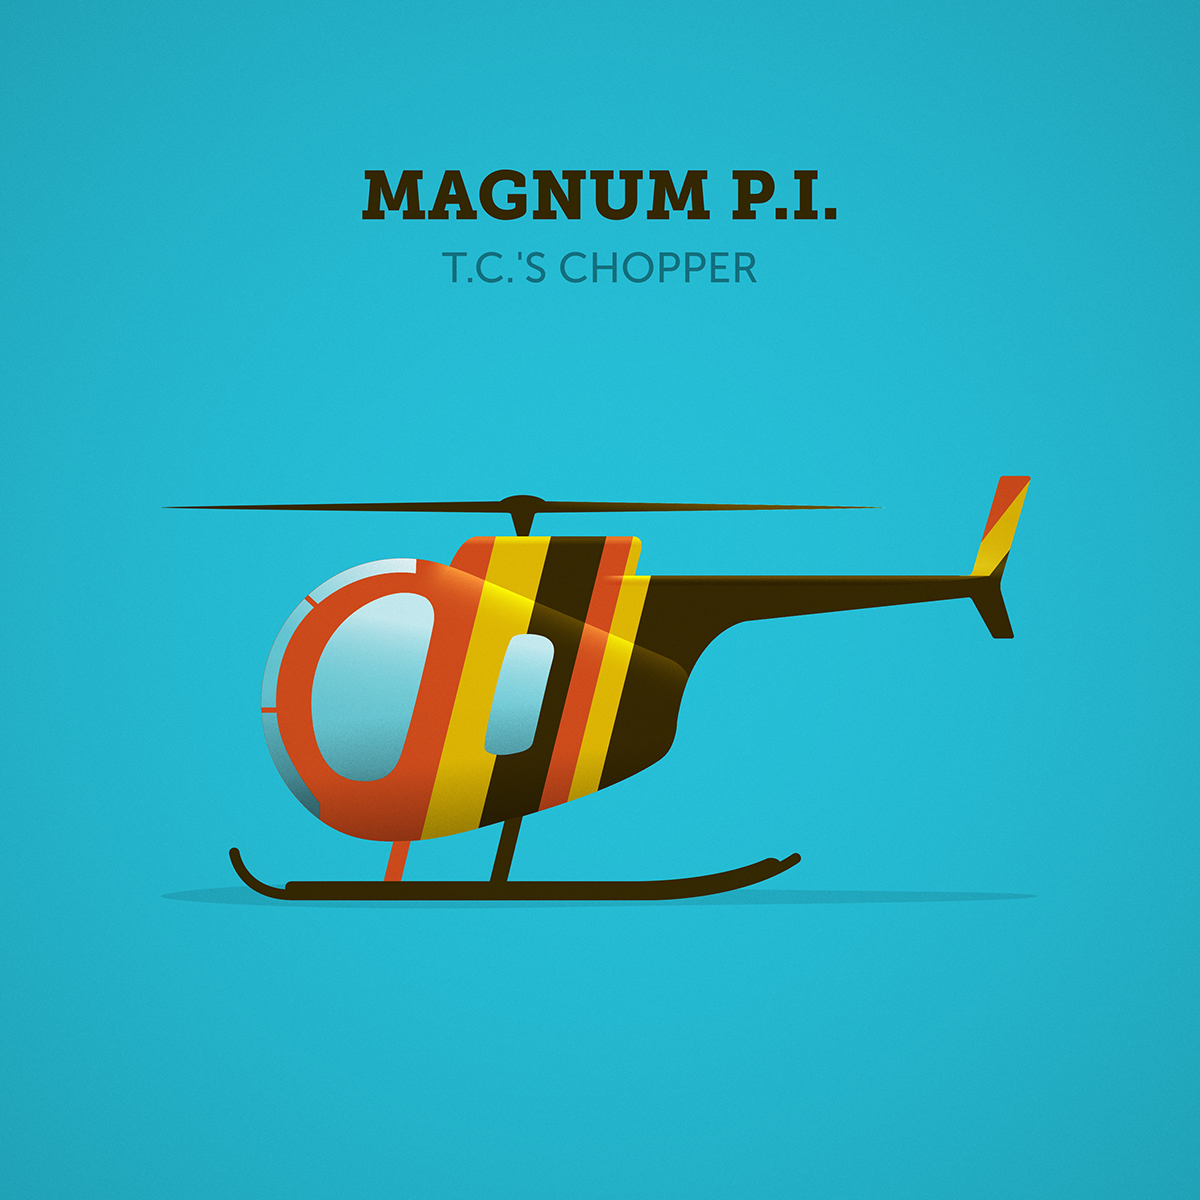 magnum affinity designer